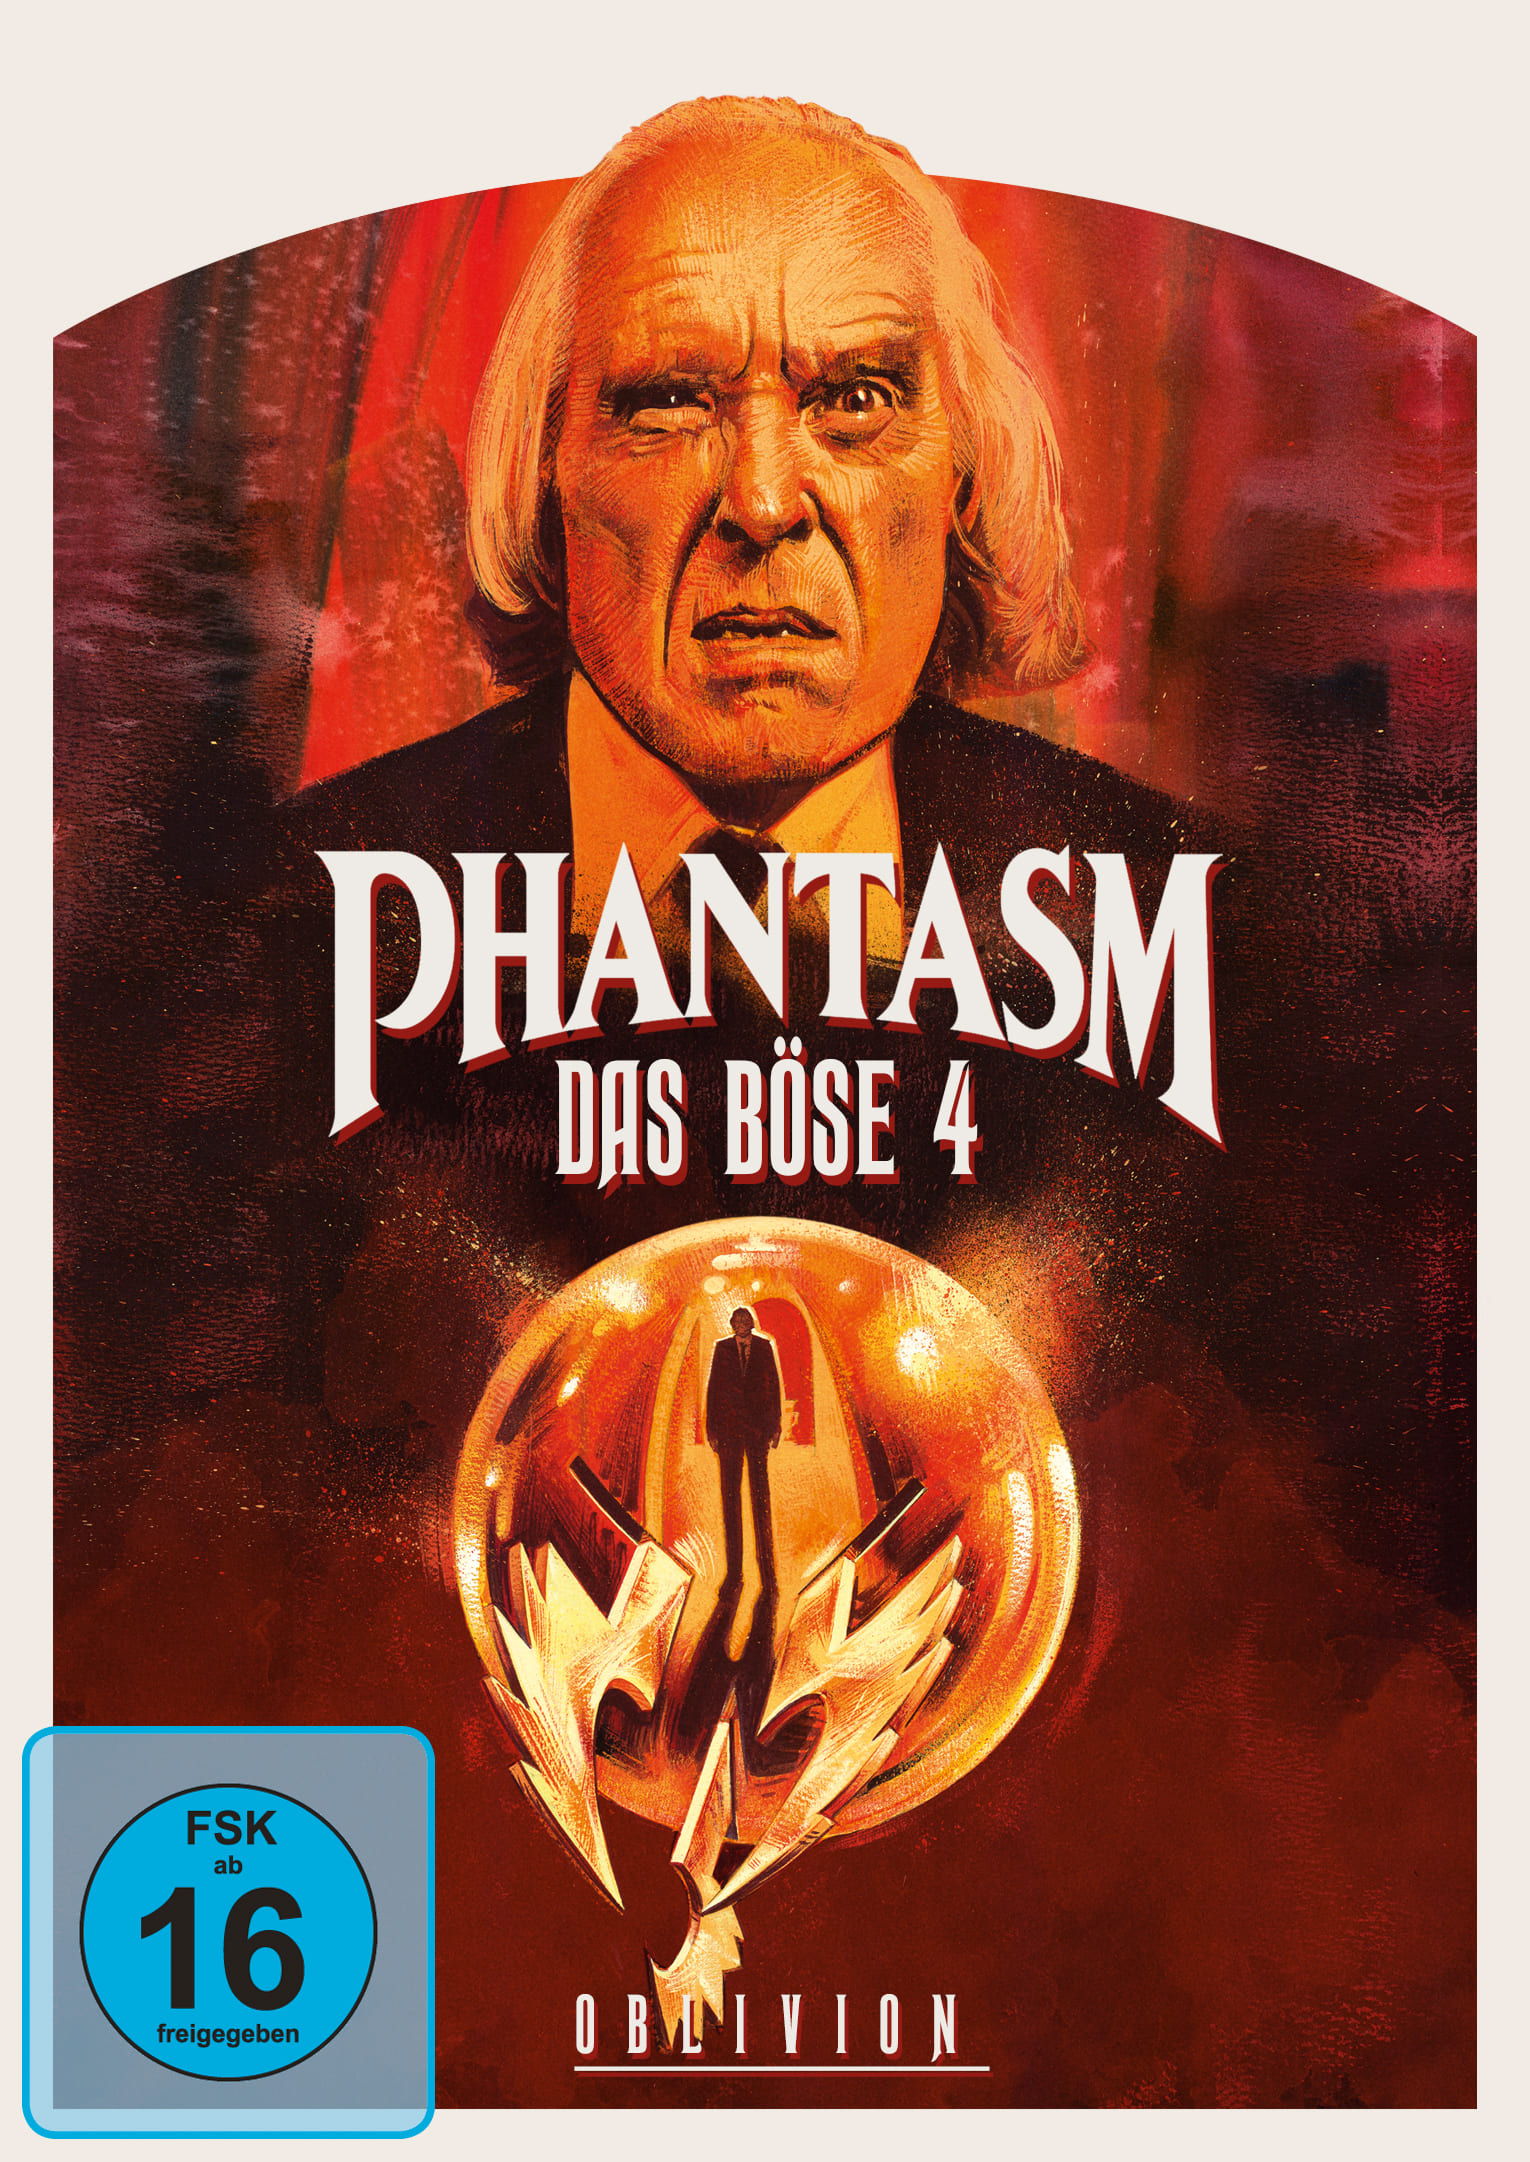 Phantasm IV - Das Böse IV (DVD) Cover